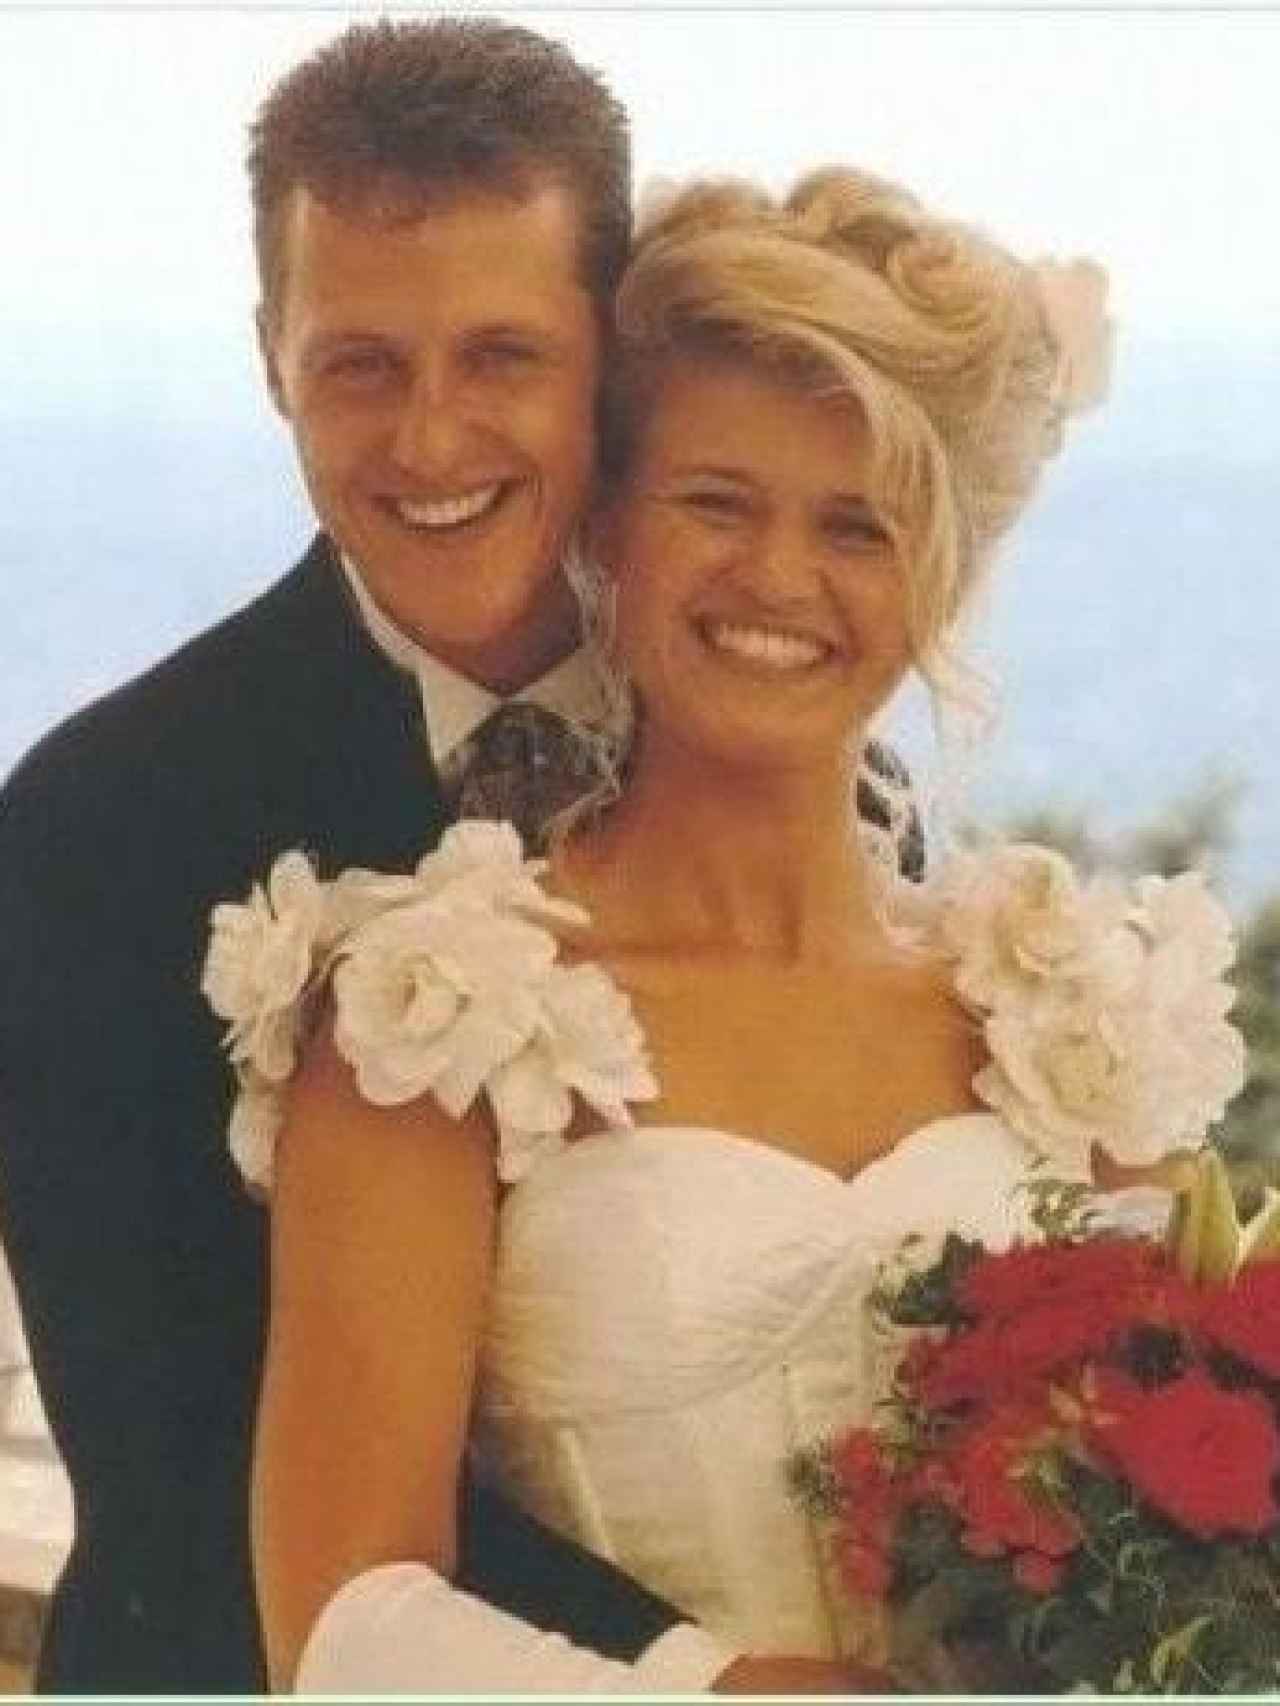 Foto de la boda de Corinna y Michael Schumacher.